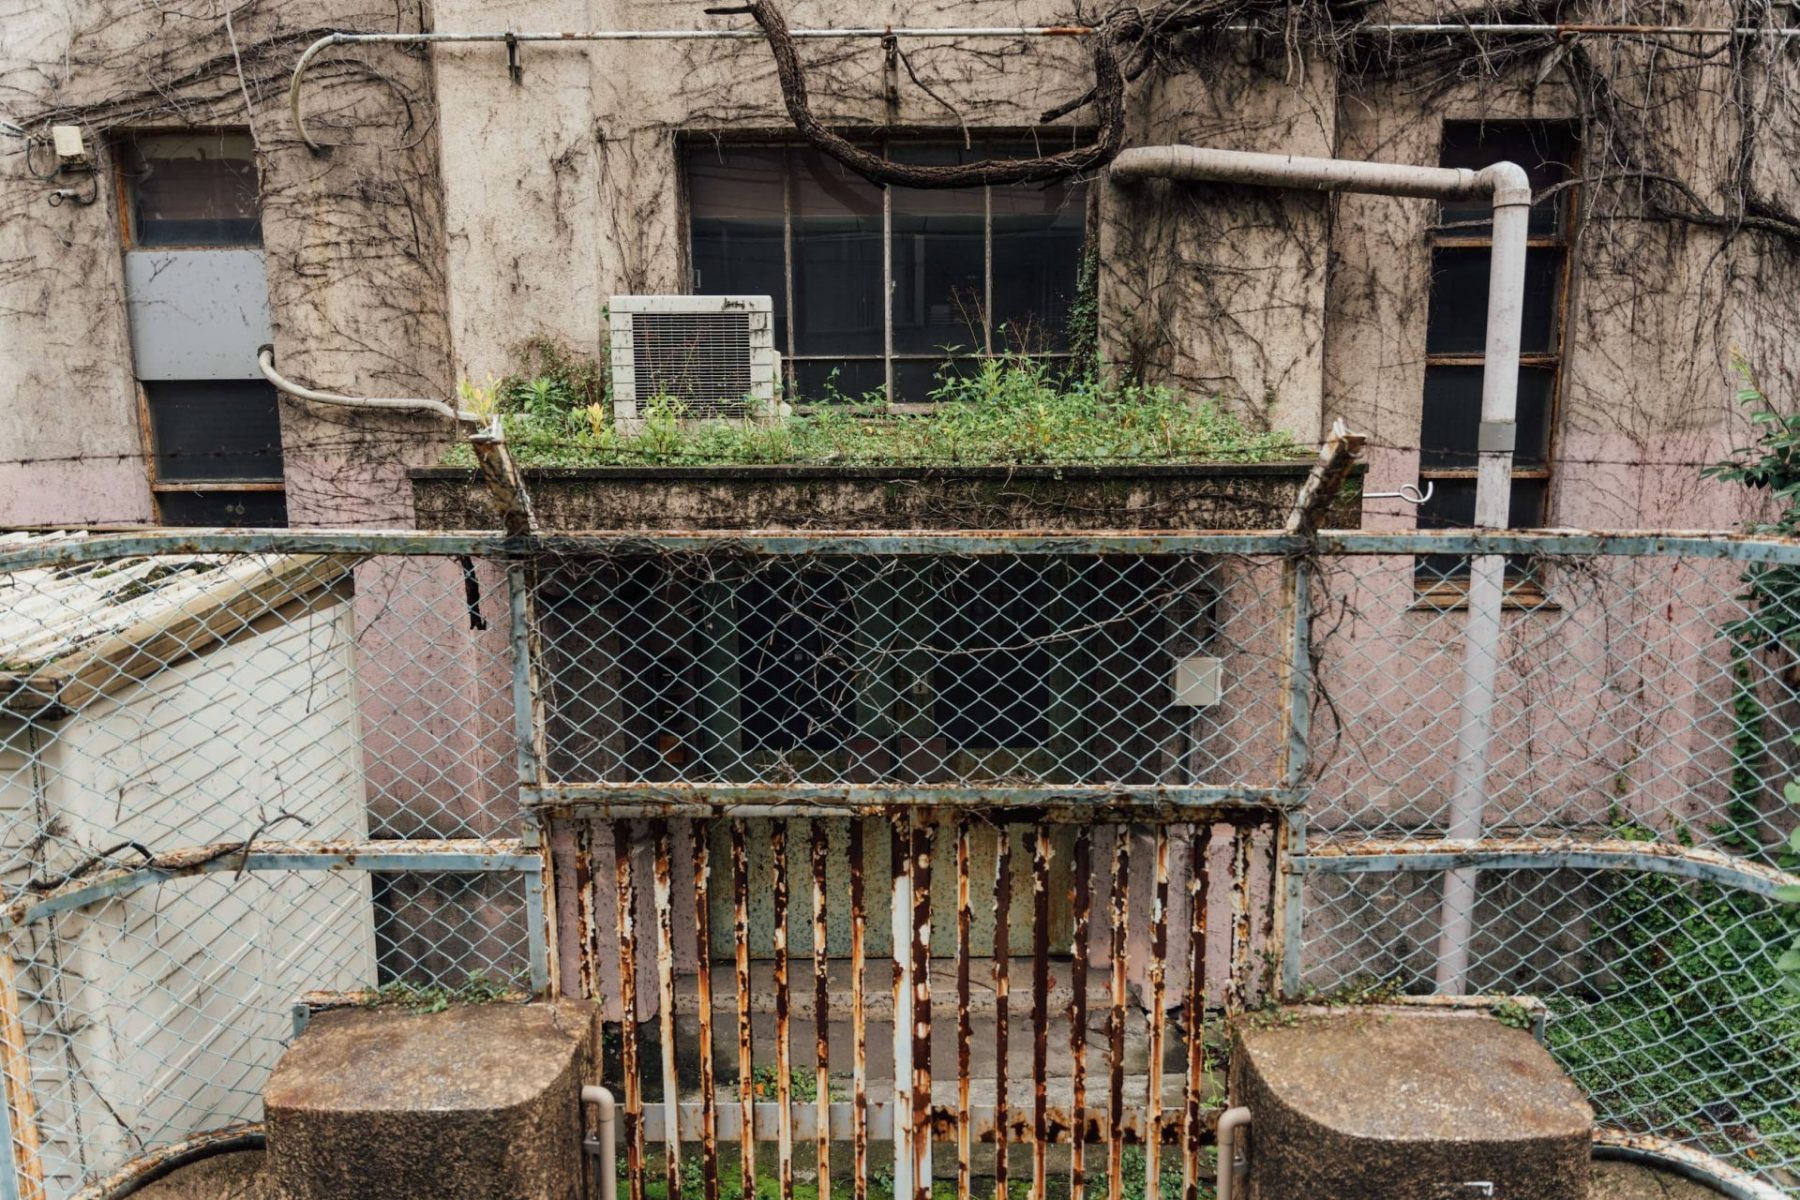 都市の野生 - 植物が街を変える100年後を想像してみる - Feature